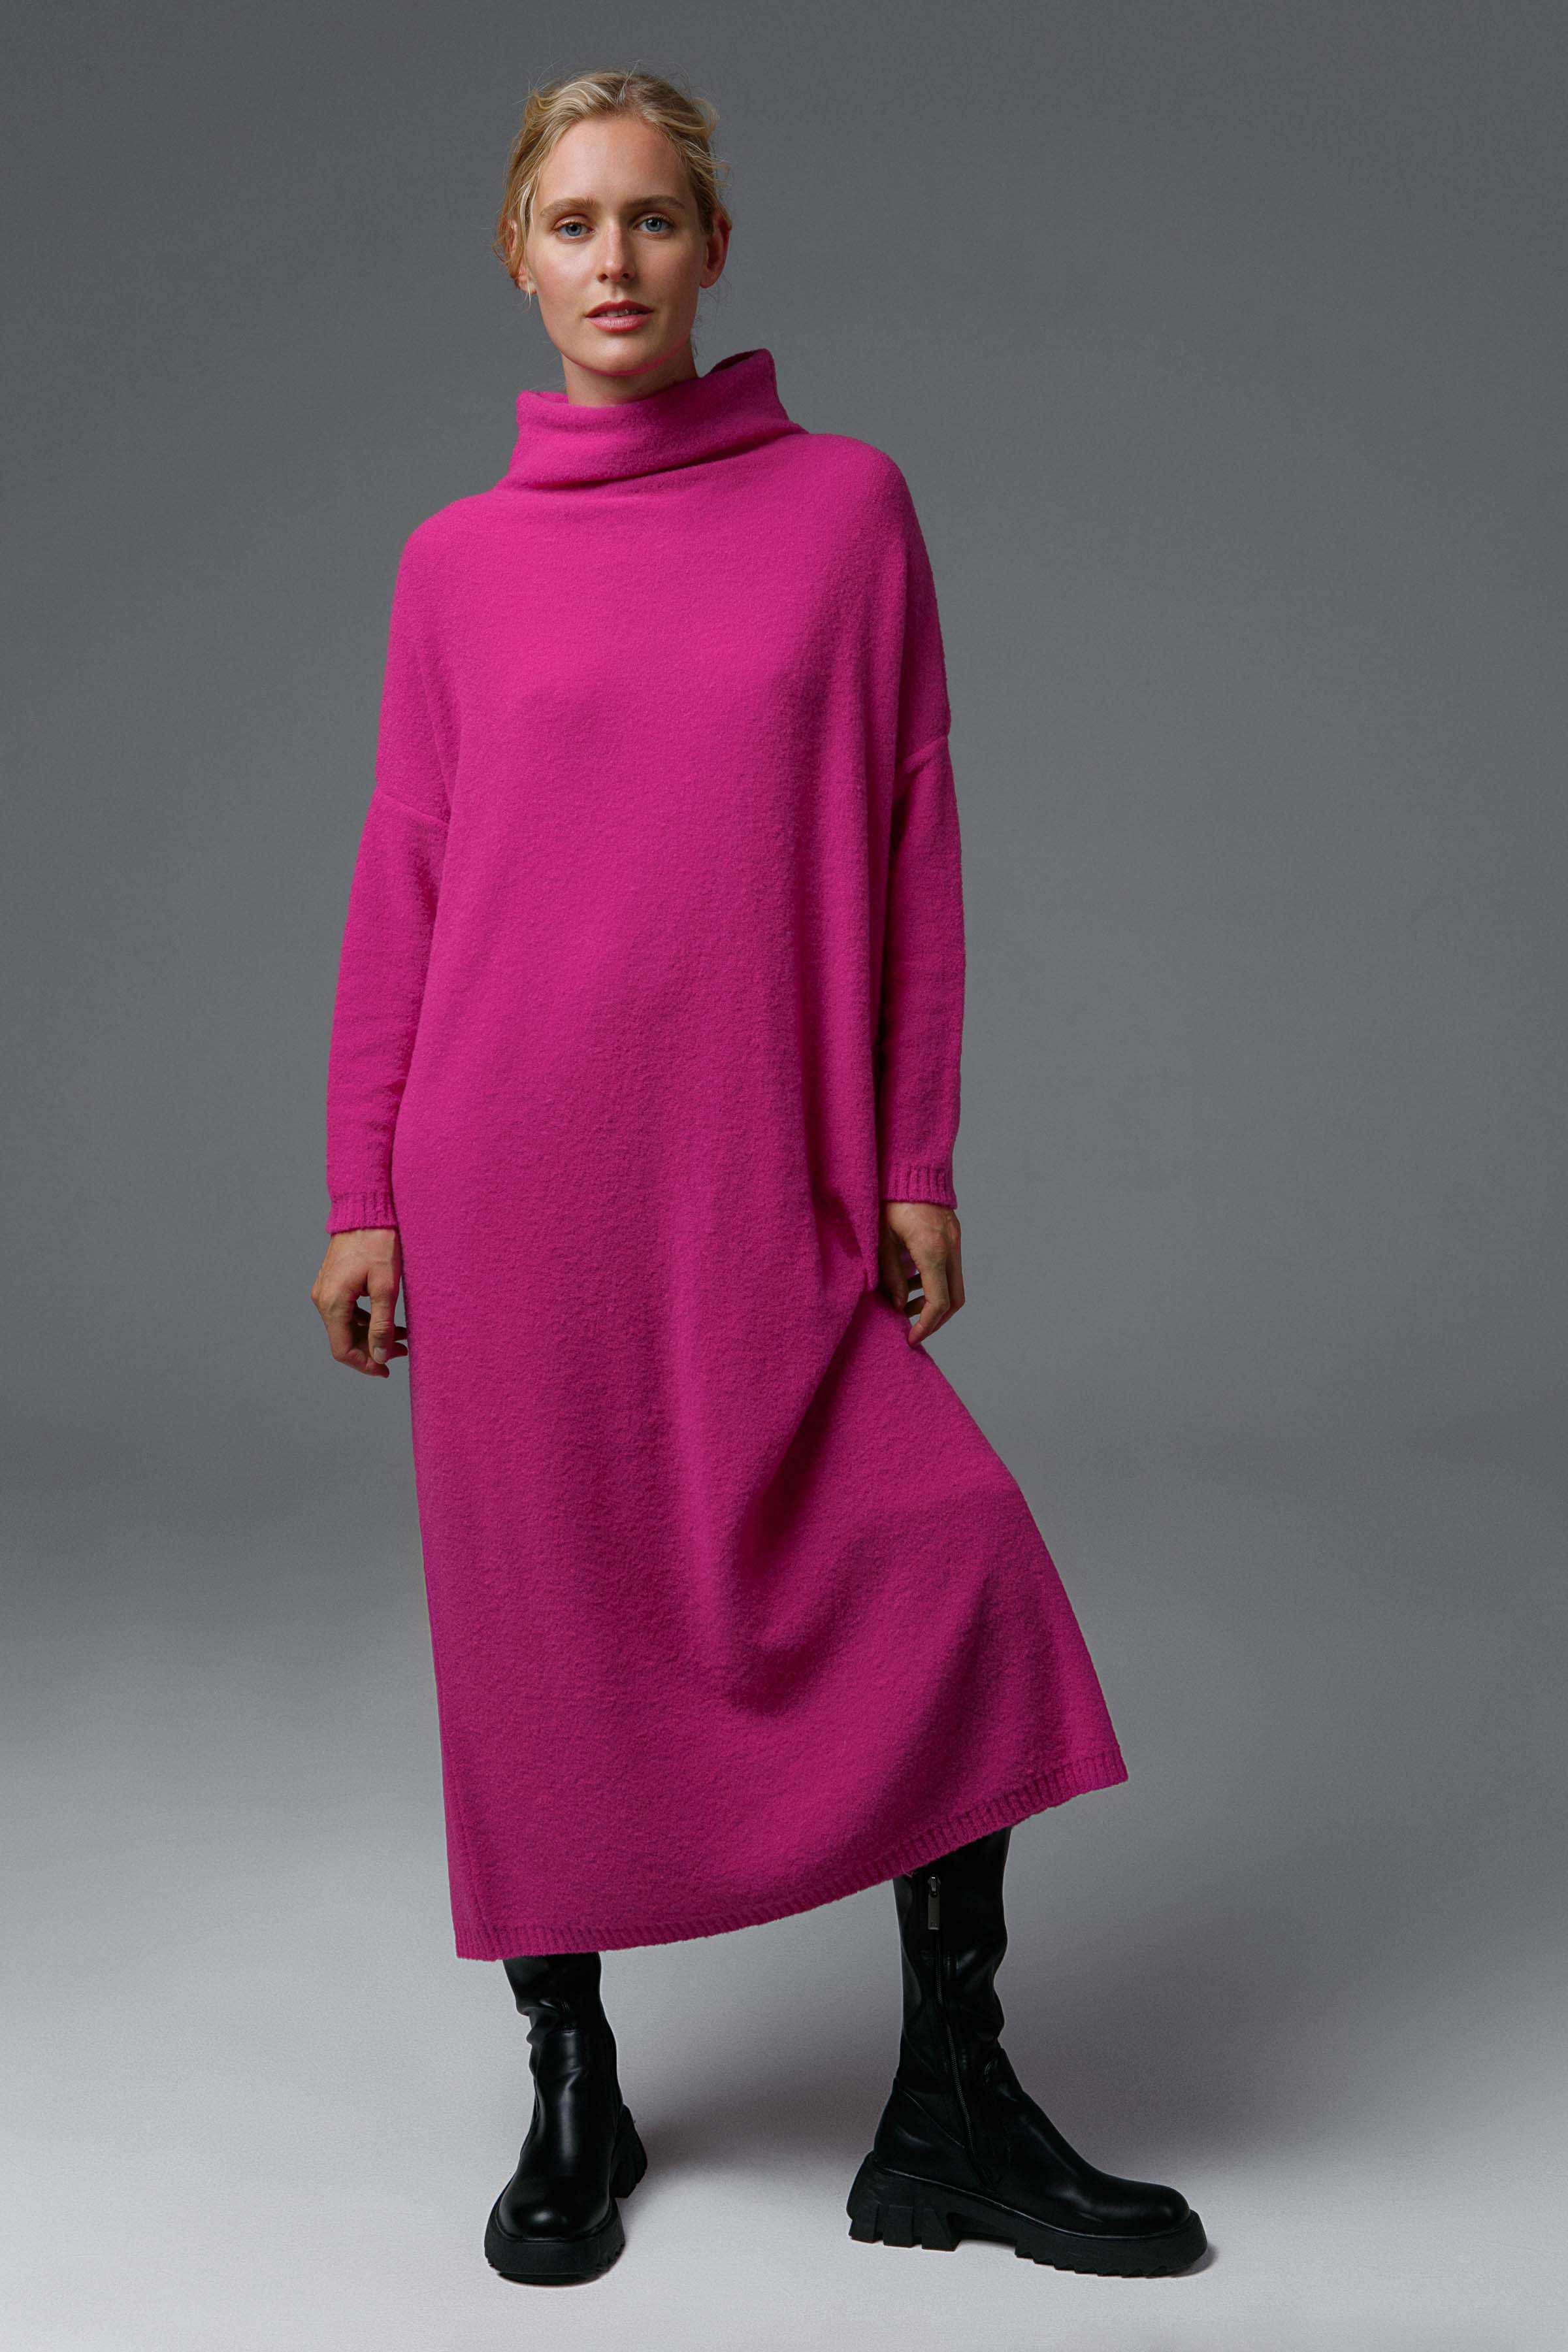 Платье База длинное 29 Розовый флокс (phlox rose) от Lesel (Лесель)! Заказывайте по ✆ 8 (800) 777 02 37